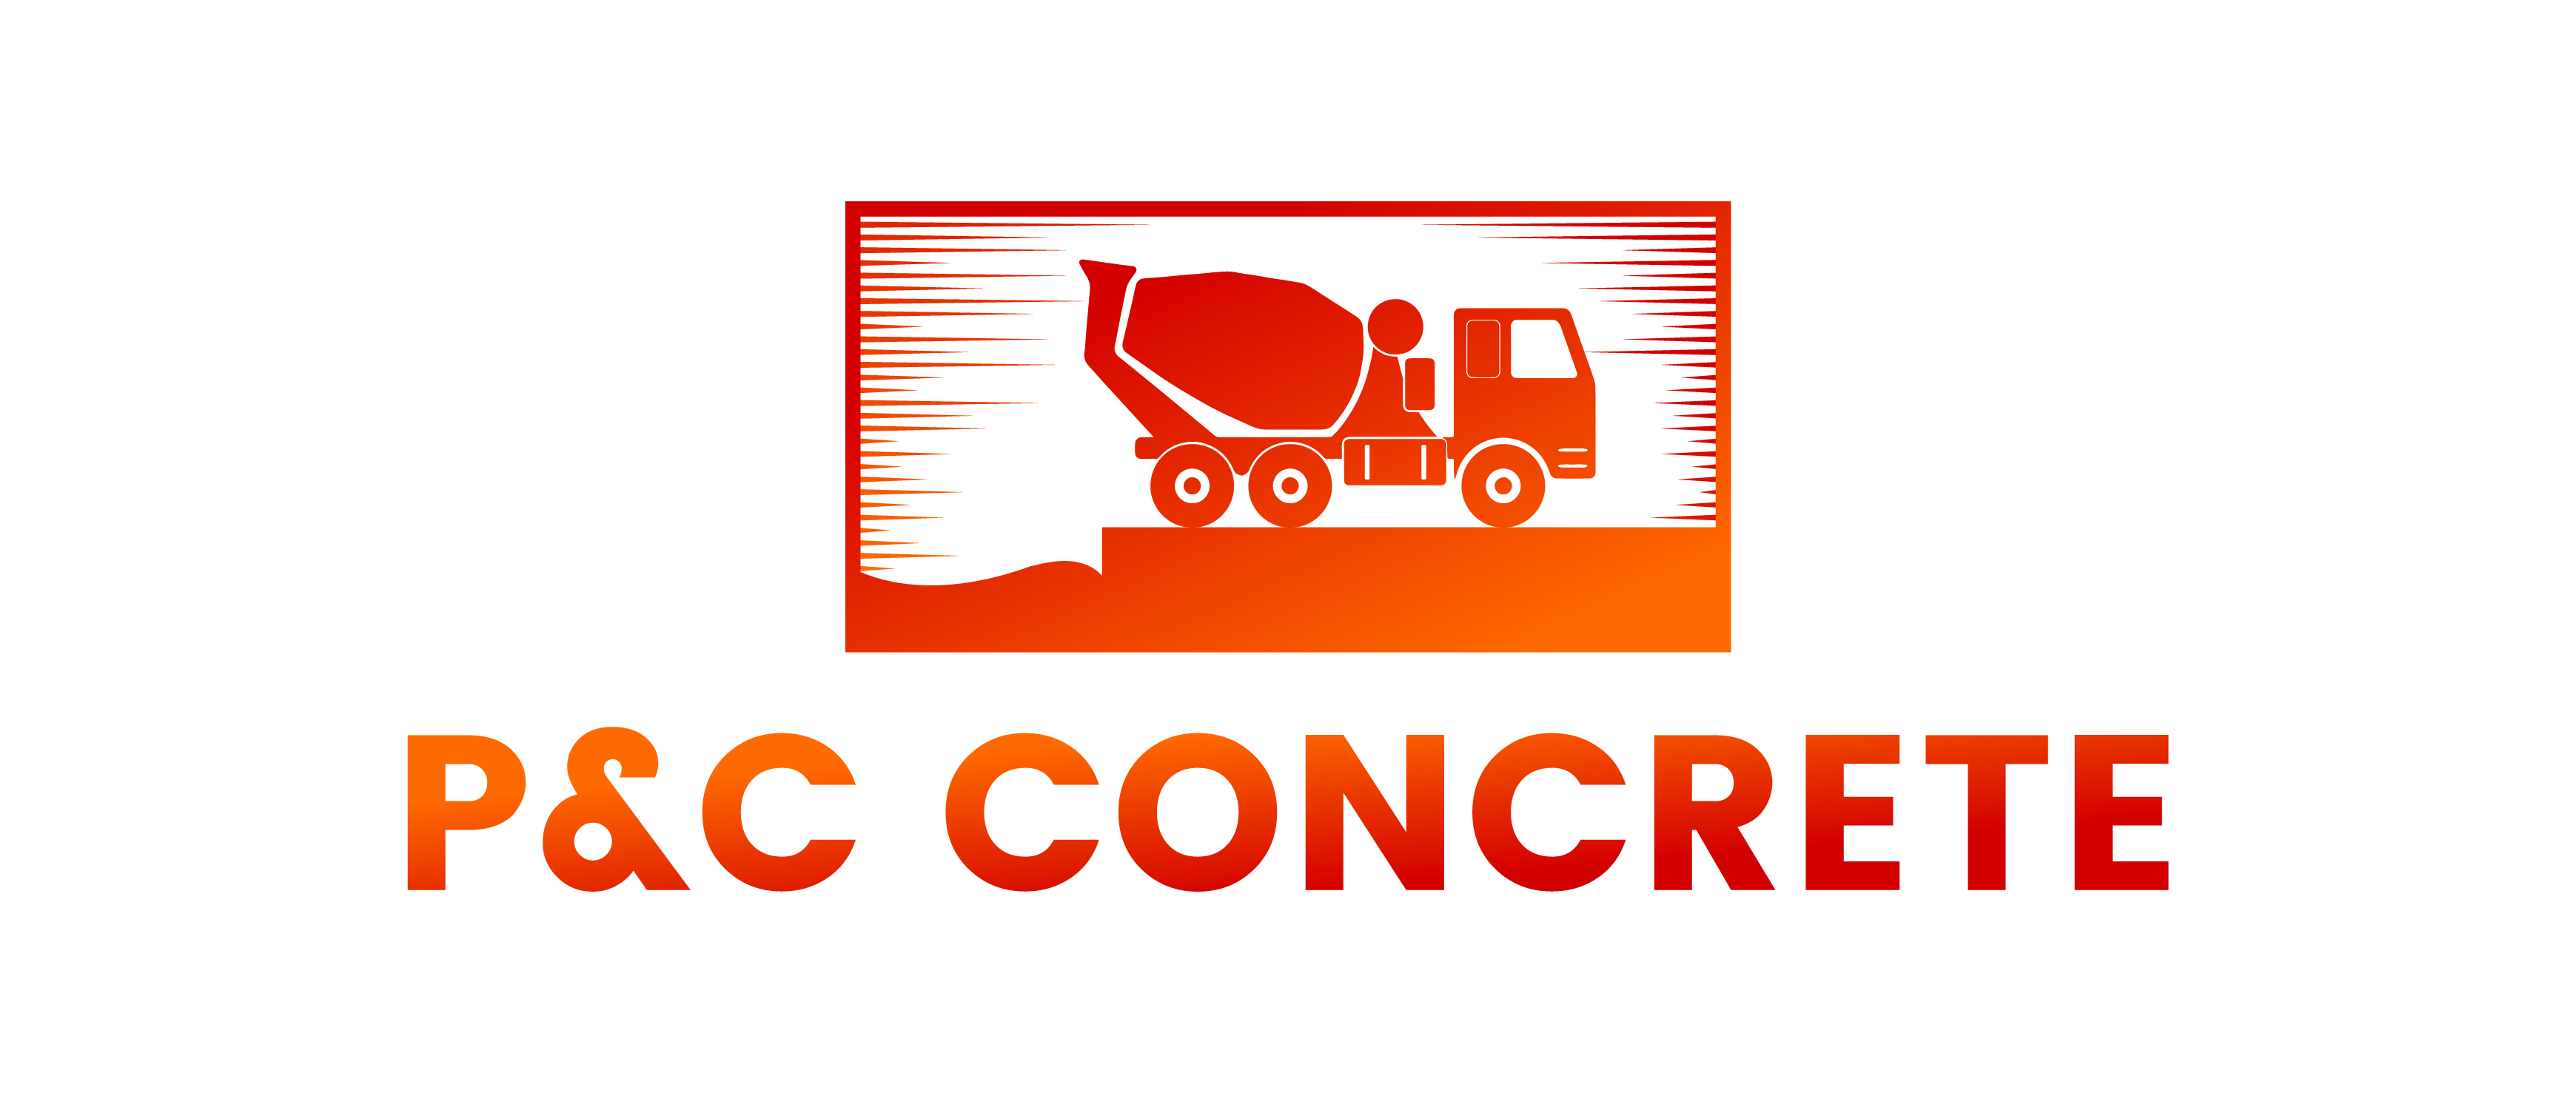 P & C Concrete Logo